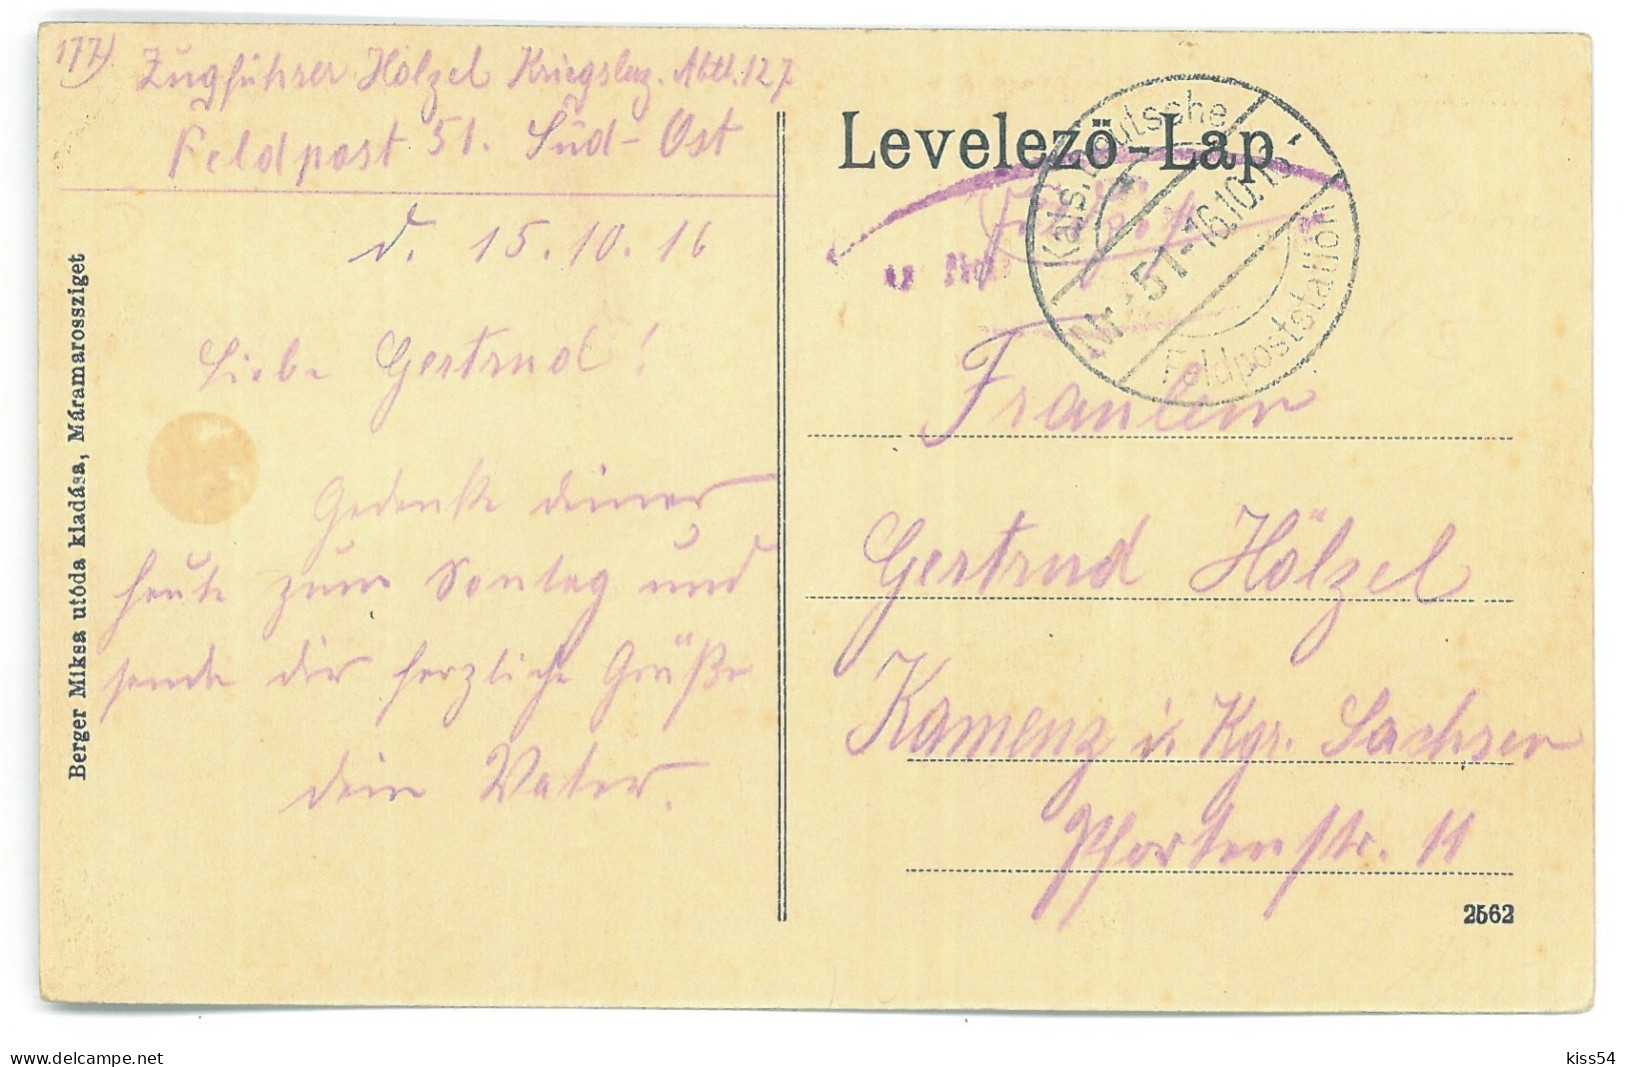 RO 09 - 25143 OCNA SUGATAG, Maramures, Market, Romania - Old Postcard, CENSOR - Used - 1916 - Rumänien